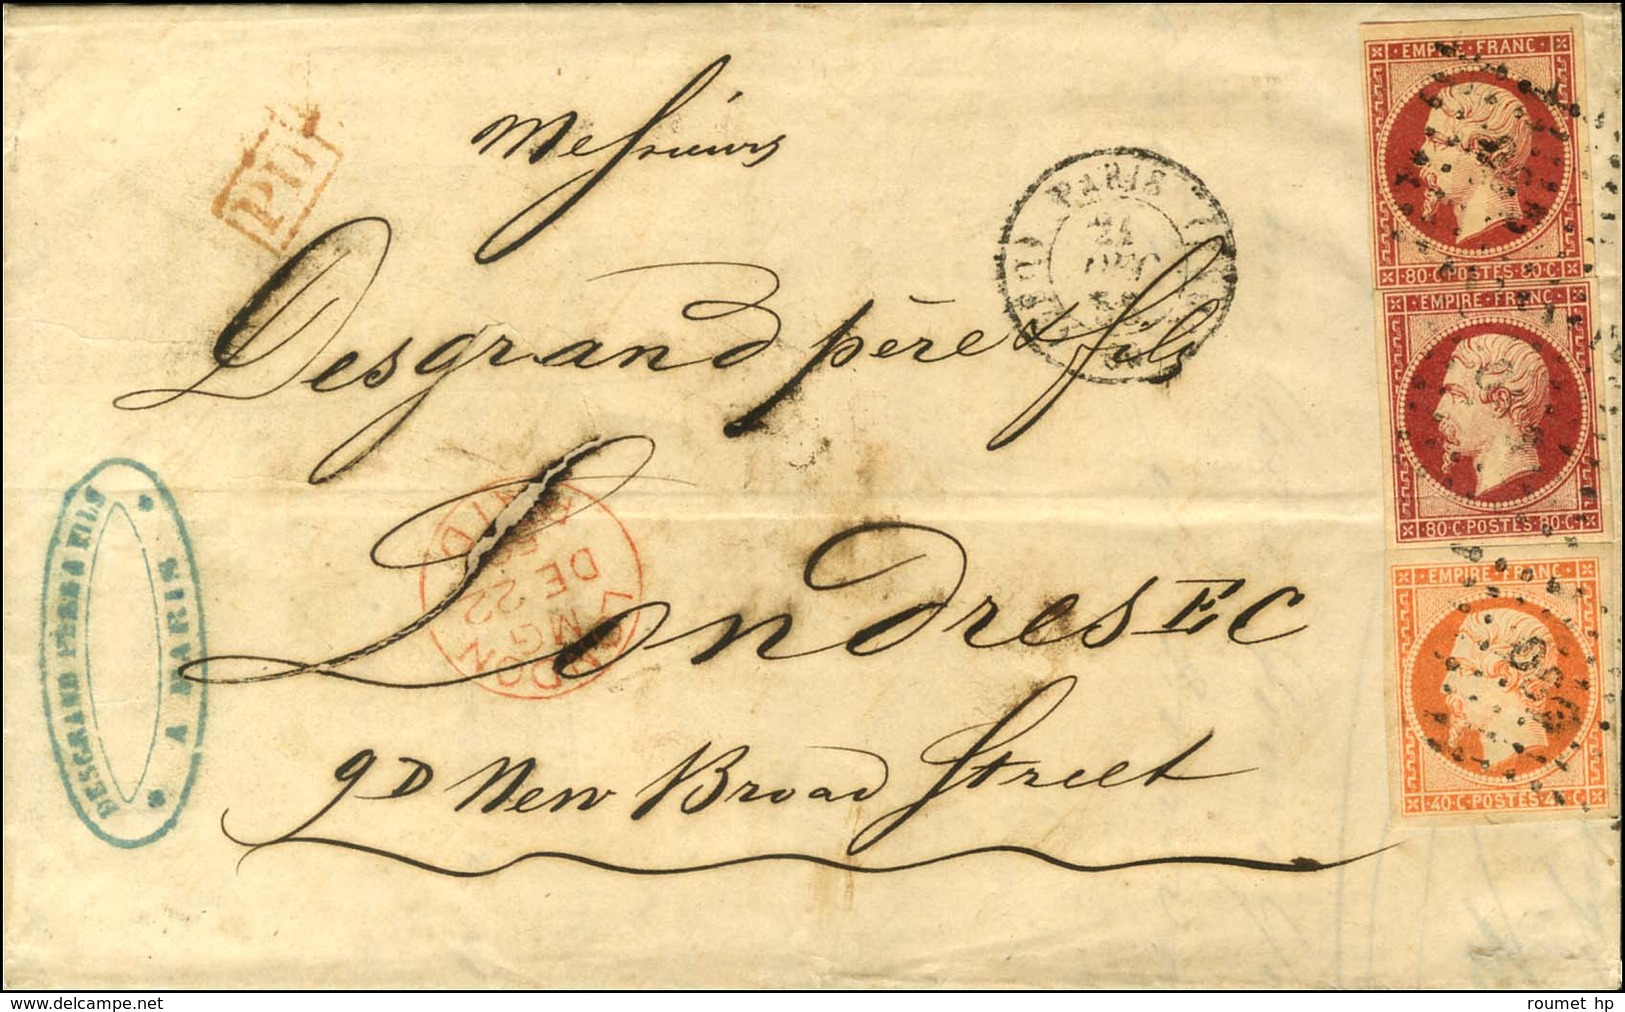 Losange DS3 / N° 16 + 17 Paire Càd DS3 PARIS DS3 (60) Sur Lettre 5 Ports Pour Londres. 1855. - TB / SUP. - R. - 1853-1860 Napoléon III